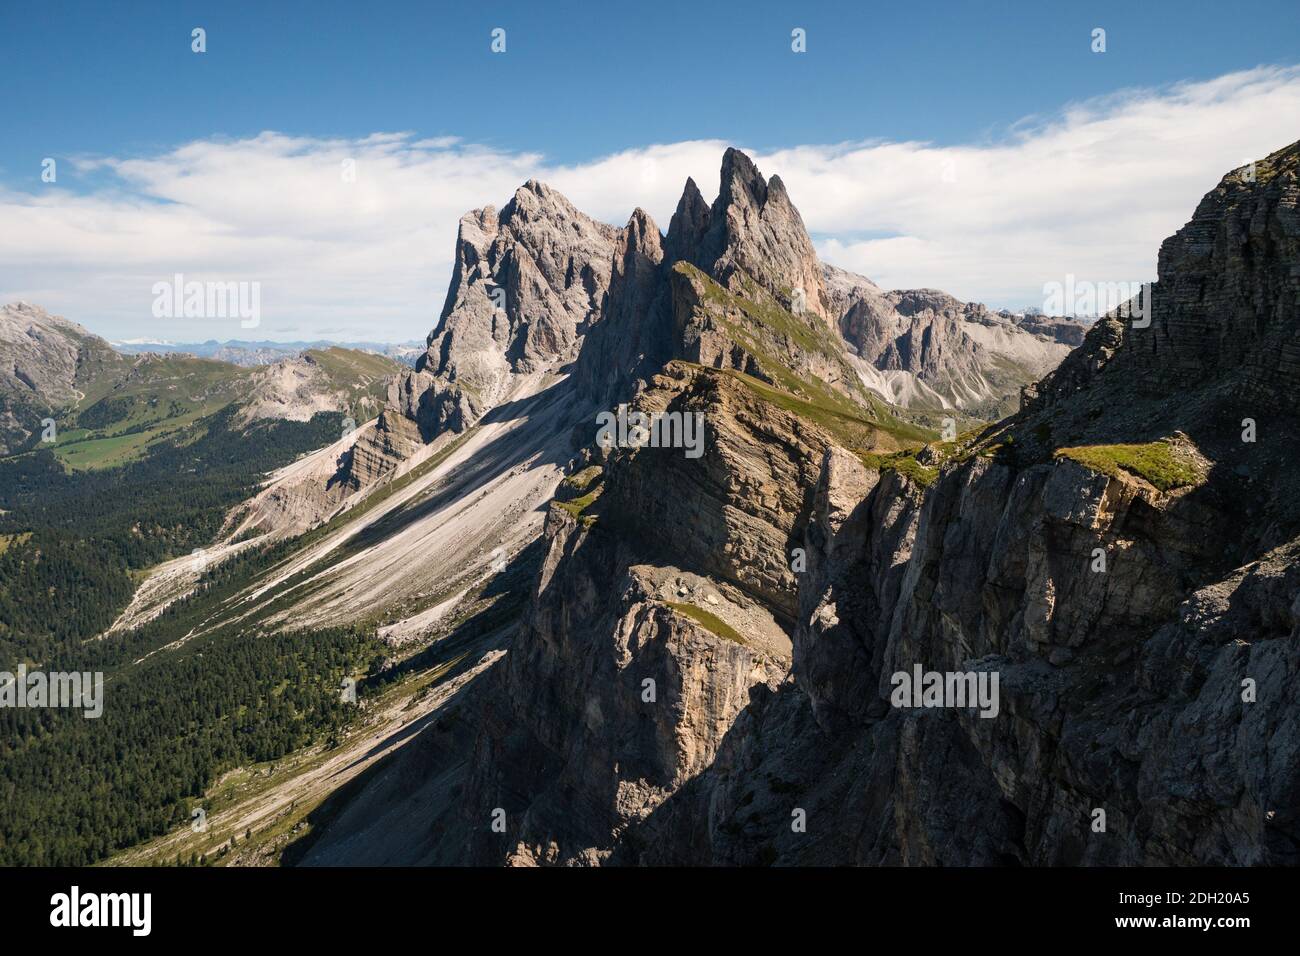 Vue sur les sommets du parc naturel d'Odle Puez depuis Seceda, magnifique paysage de montagne dans les Alpes, les Dolomites, l'Italie, l'Europe Banque D'Images